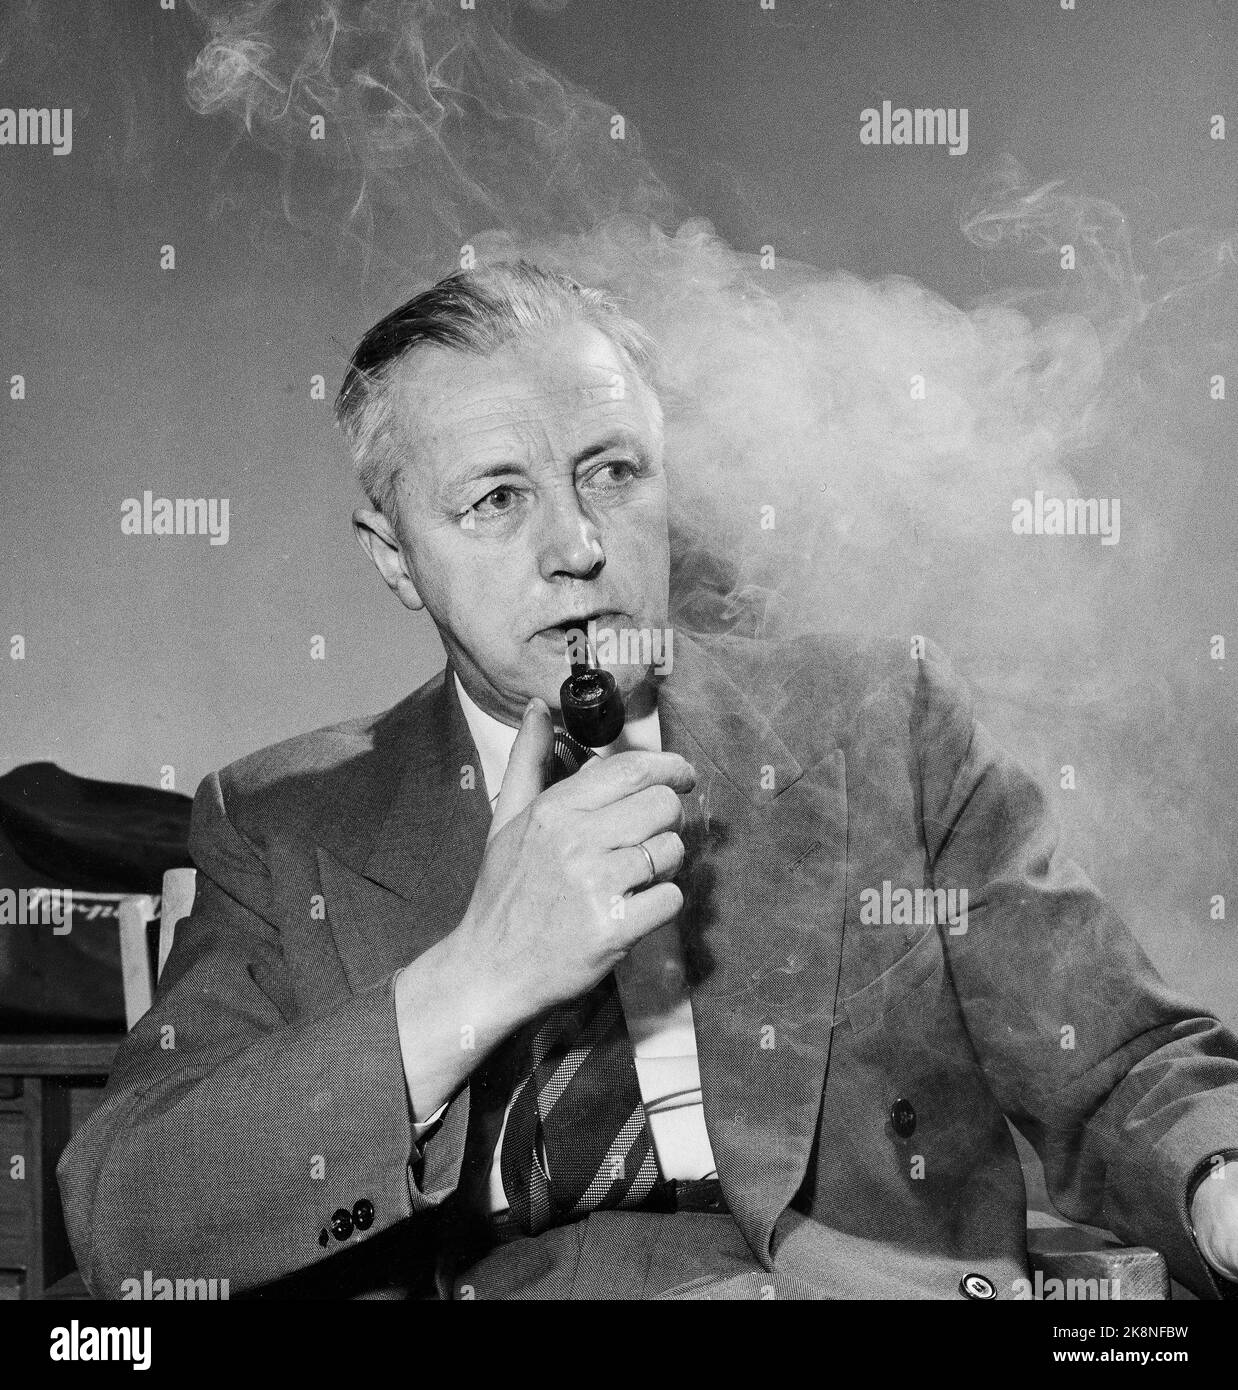 1959 politicien Jon Leirfall - situation d'entrevue avec pipe et beaucoup de fumée. Cette année, le Parti du Centre change de nom pour passer du Parti des agriculteurs au Parti du Centre au printemps. Photo: Sverre A. Børretzen / actuel / NTB Banque D'Images